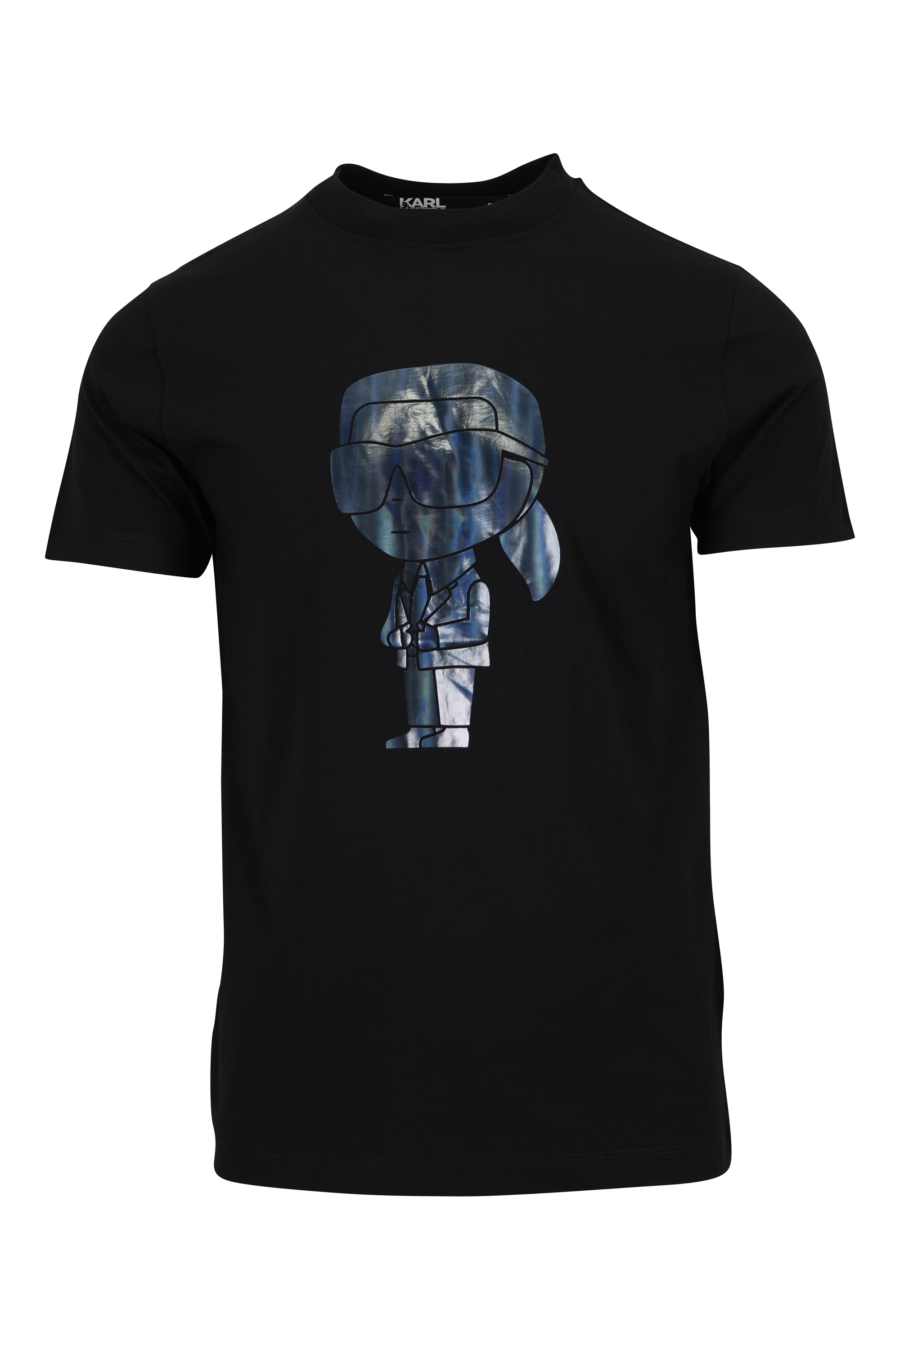 Camiseta negra con maxilogo "karl" en degradé - 4062226967136